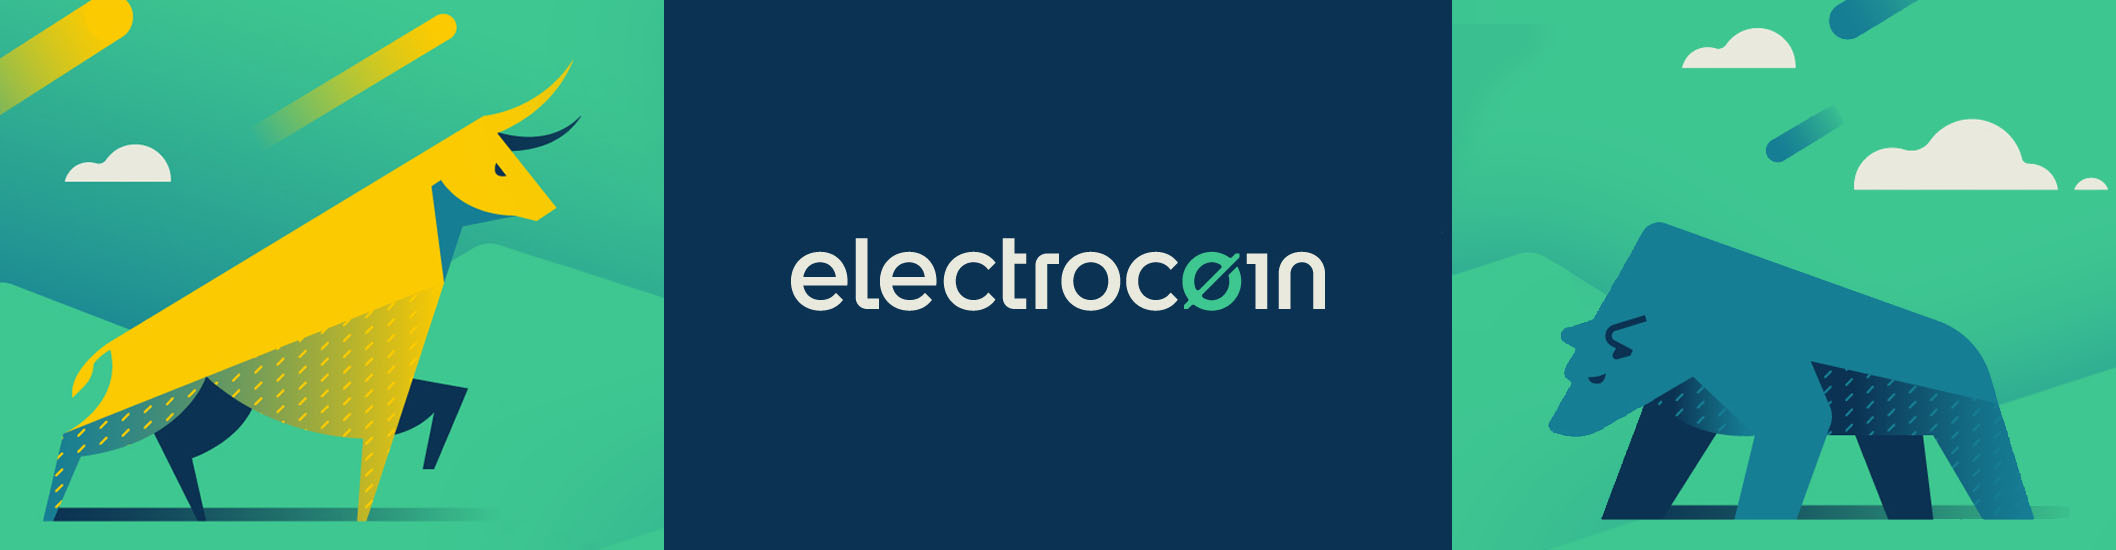 Electrocoin Hero 2116x550